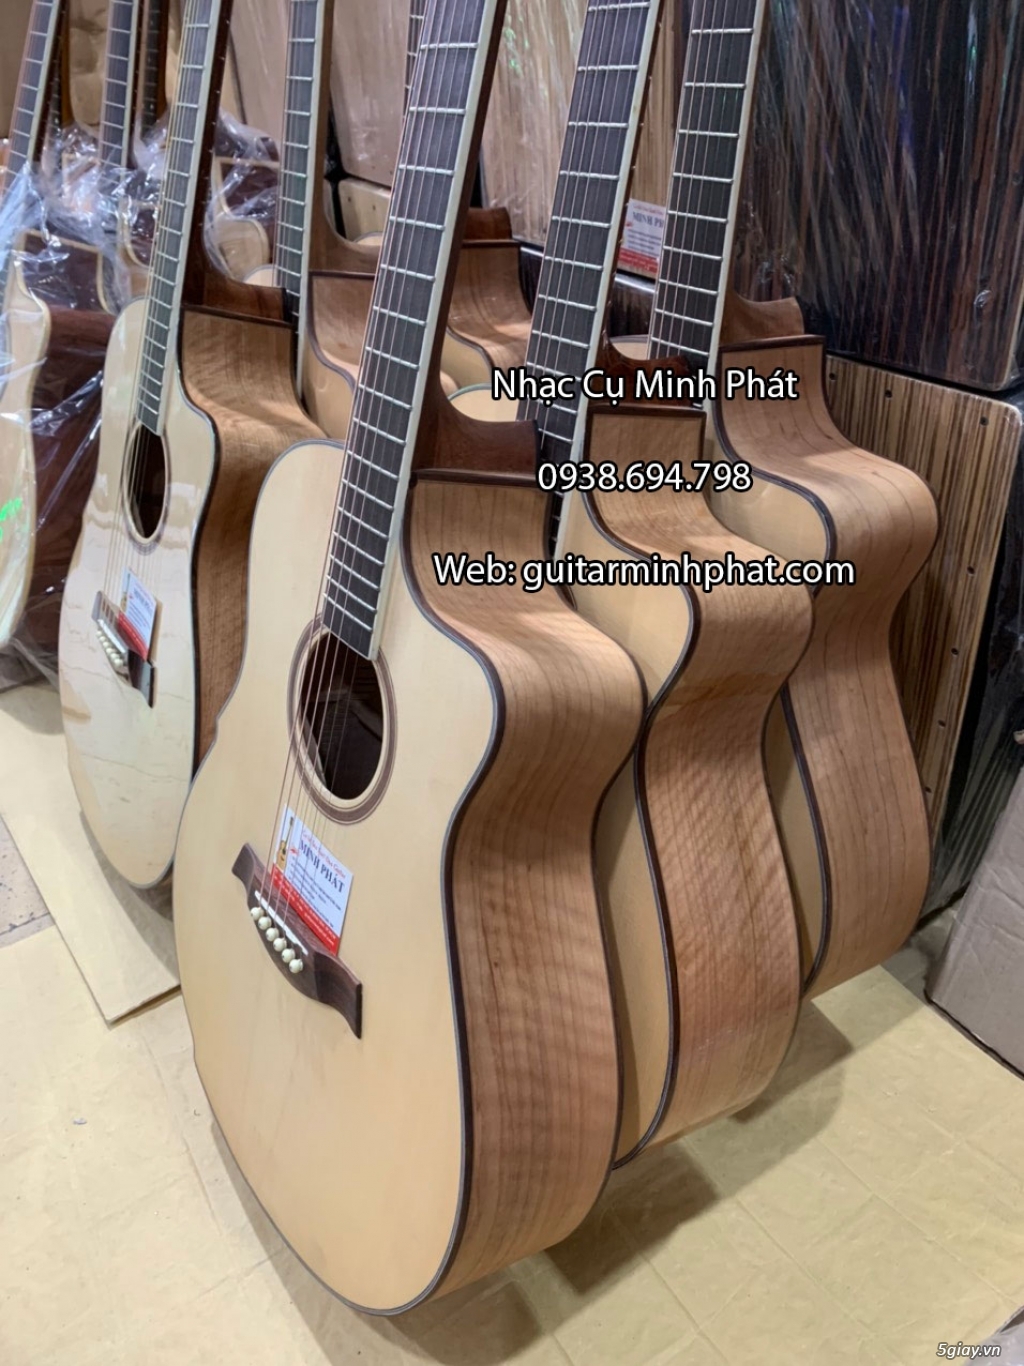 Bán đàn guitar, ukulele, kalimba giá rẻ ở quận Gò Vấp TPHCM - 17